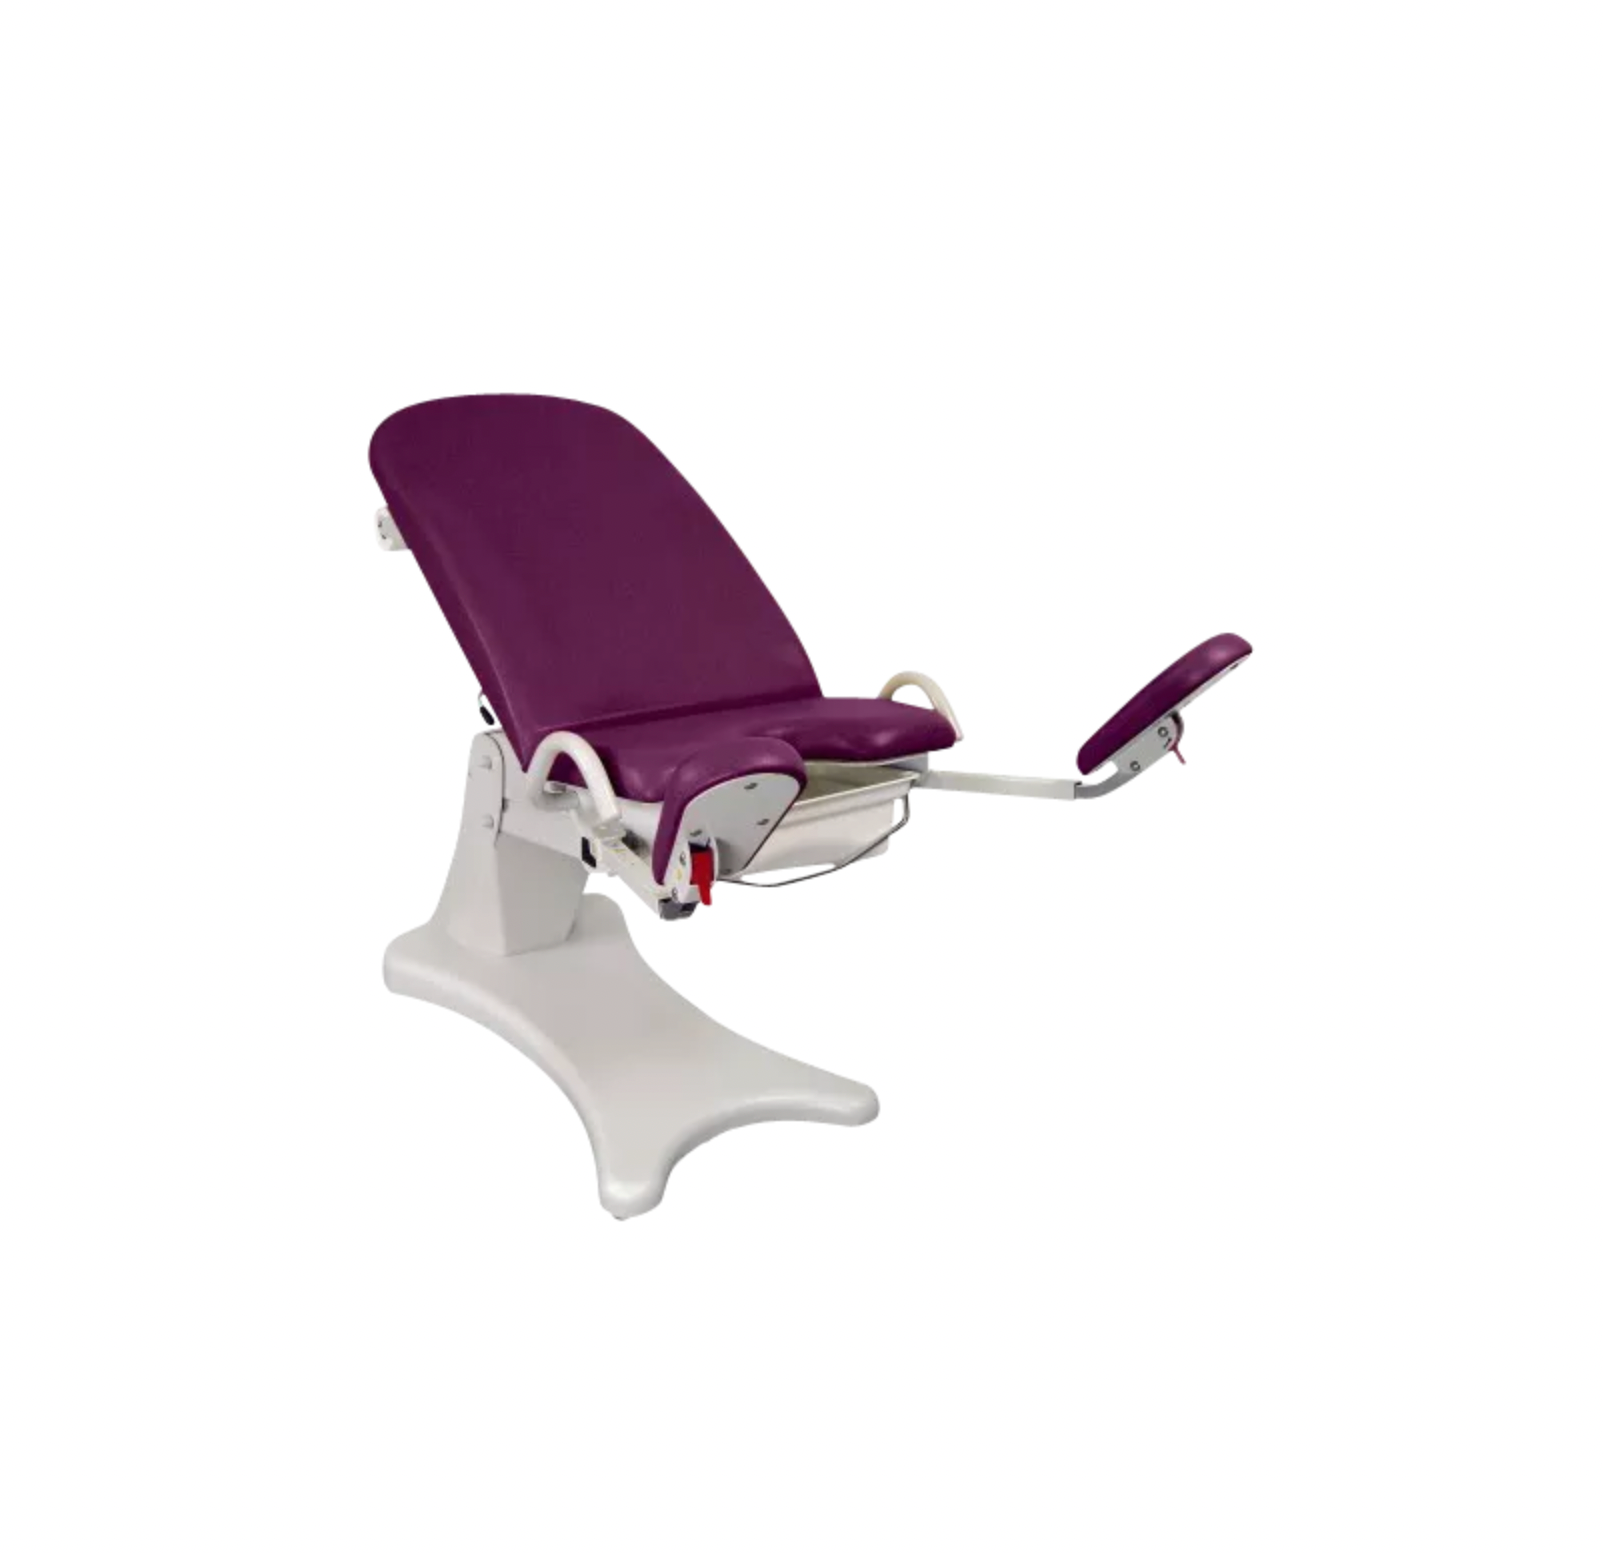 ELANSA fauteuil gynécologique fabriqué en France par PROMOTAl distribué par Tablelya